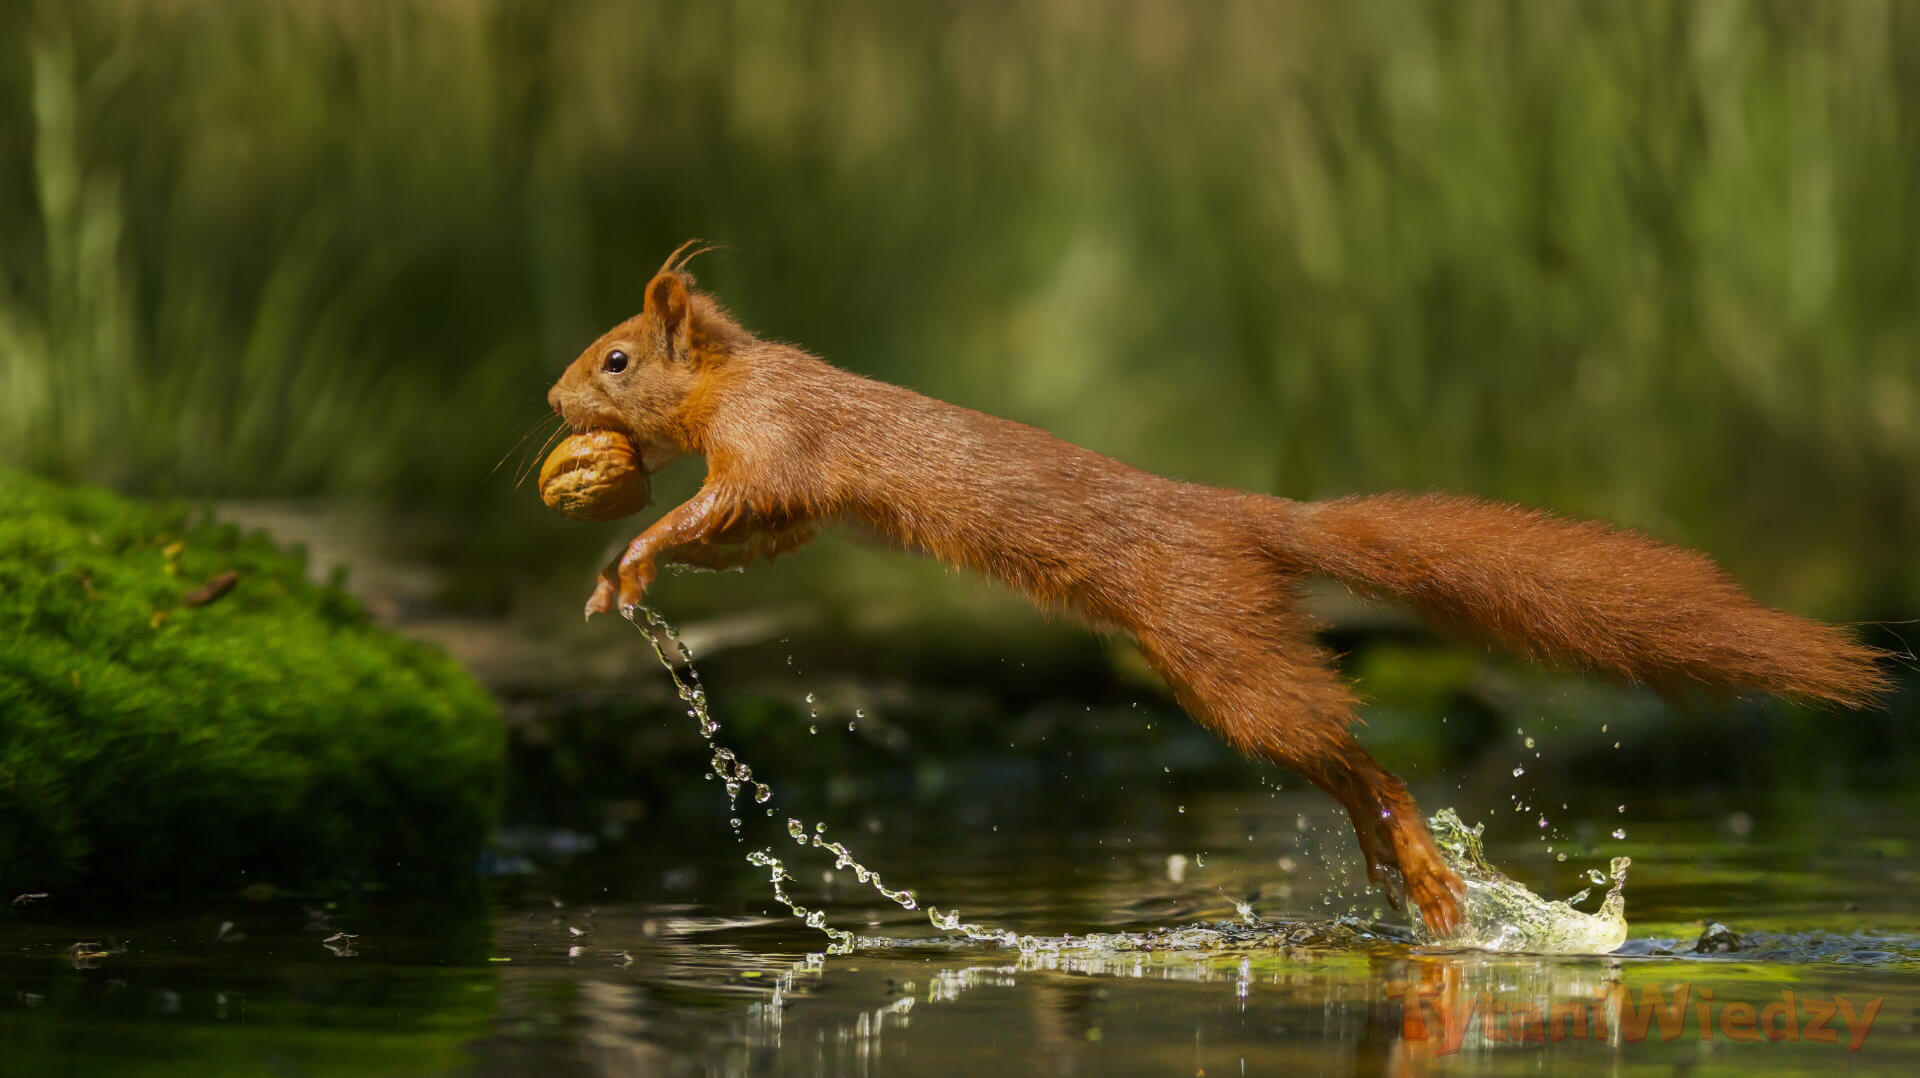 Wiewiórka skacząca przez wodę z jedzeniem